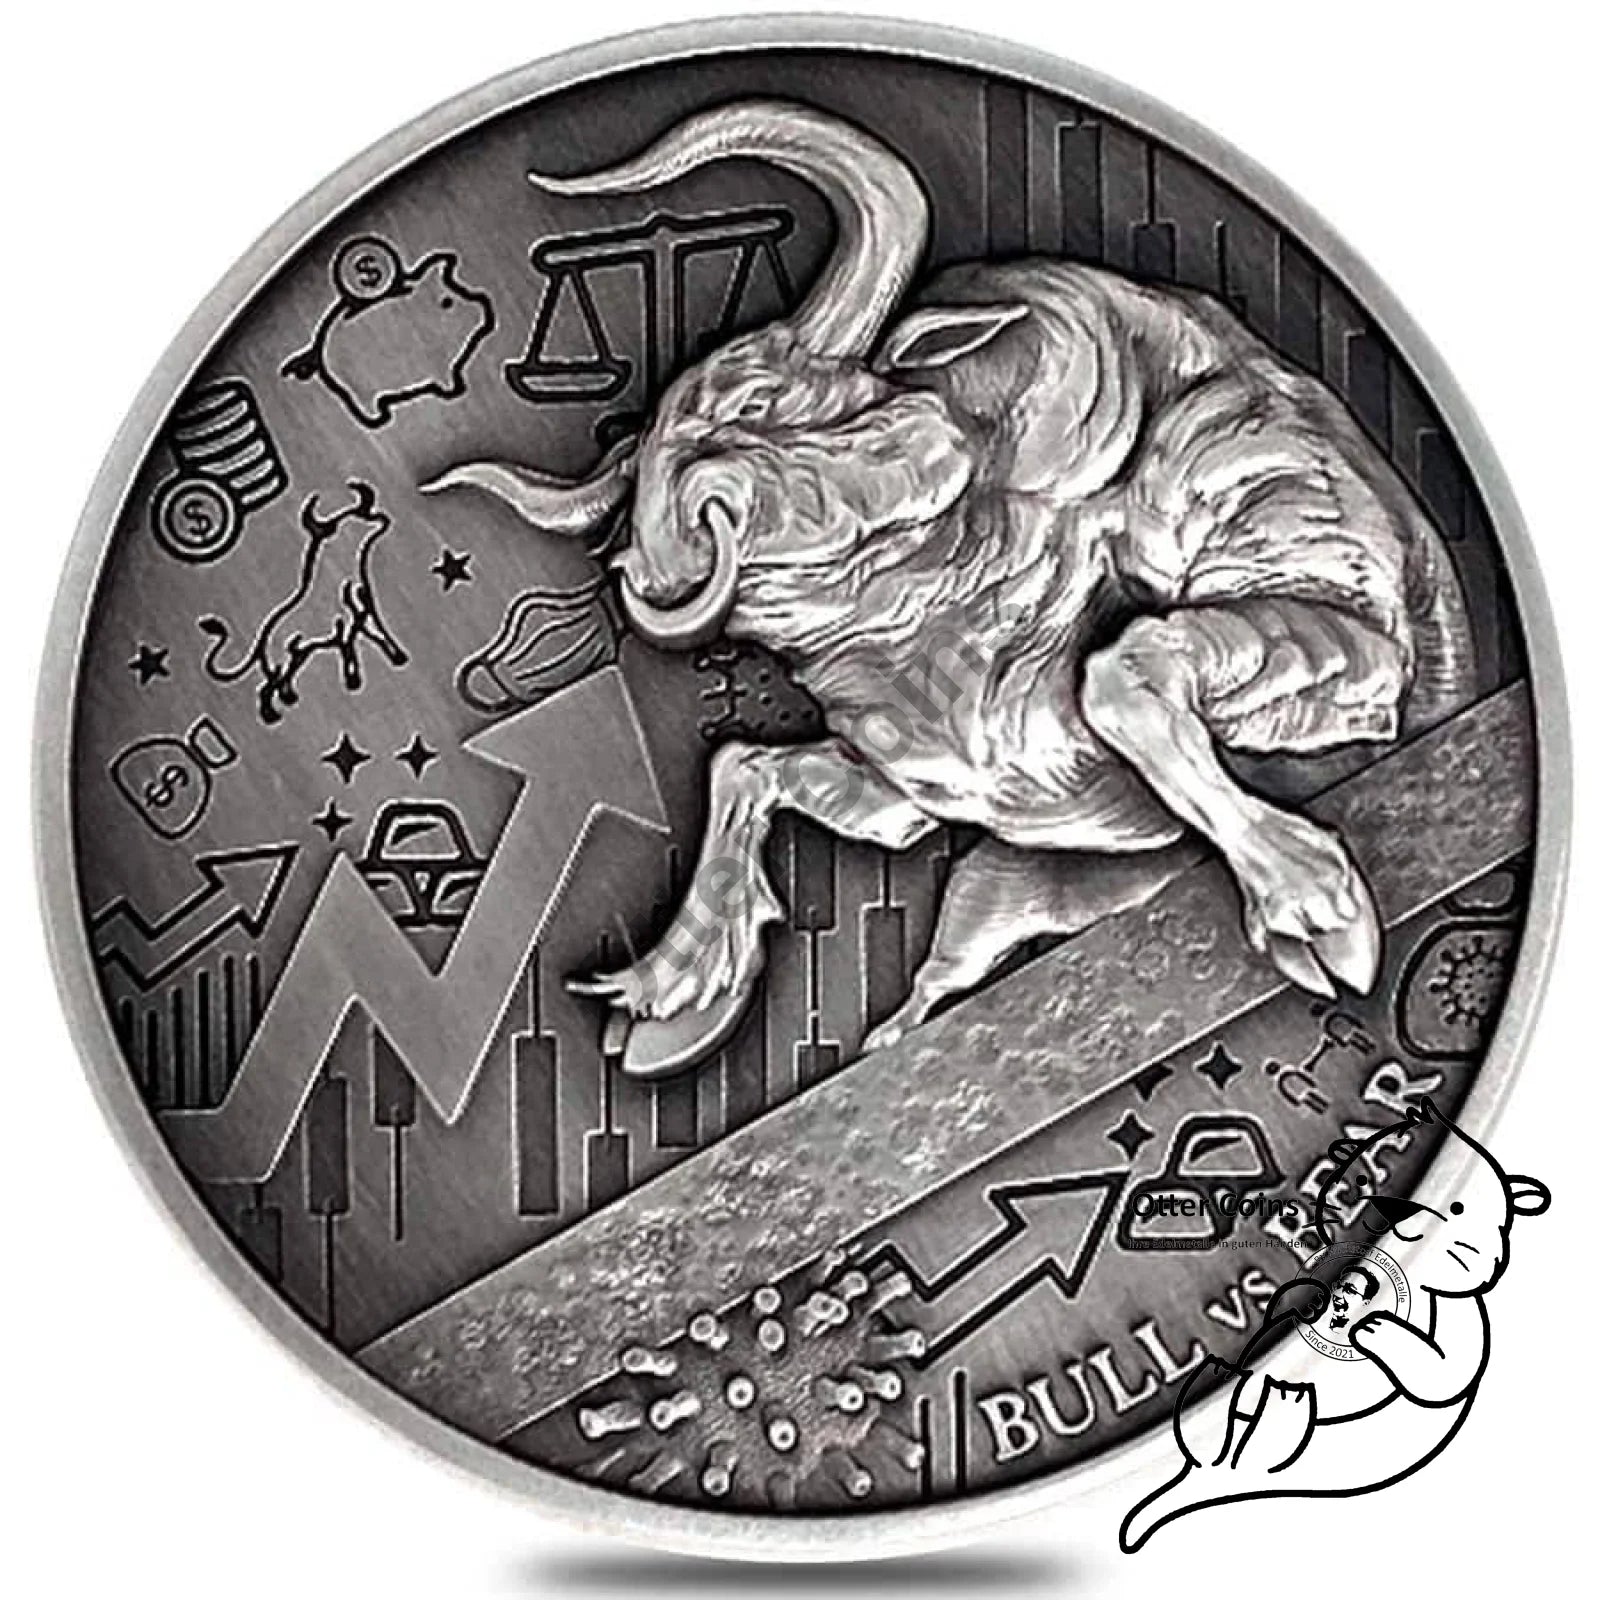 Chad 2 oz Silber Bull vs. Bear Antik High Relief Coin 2021*